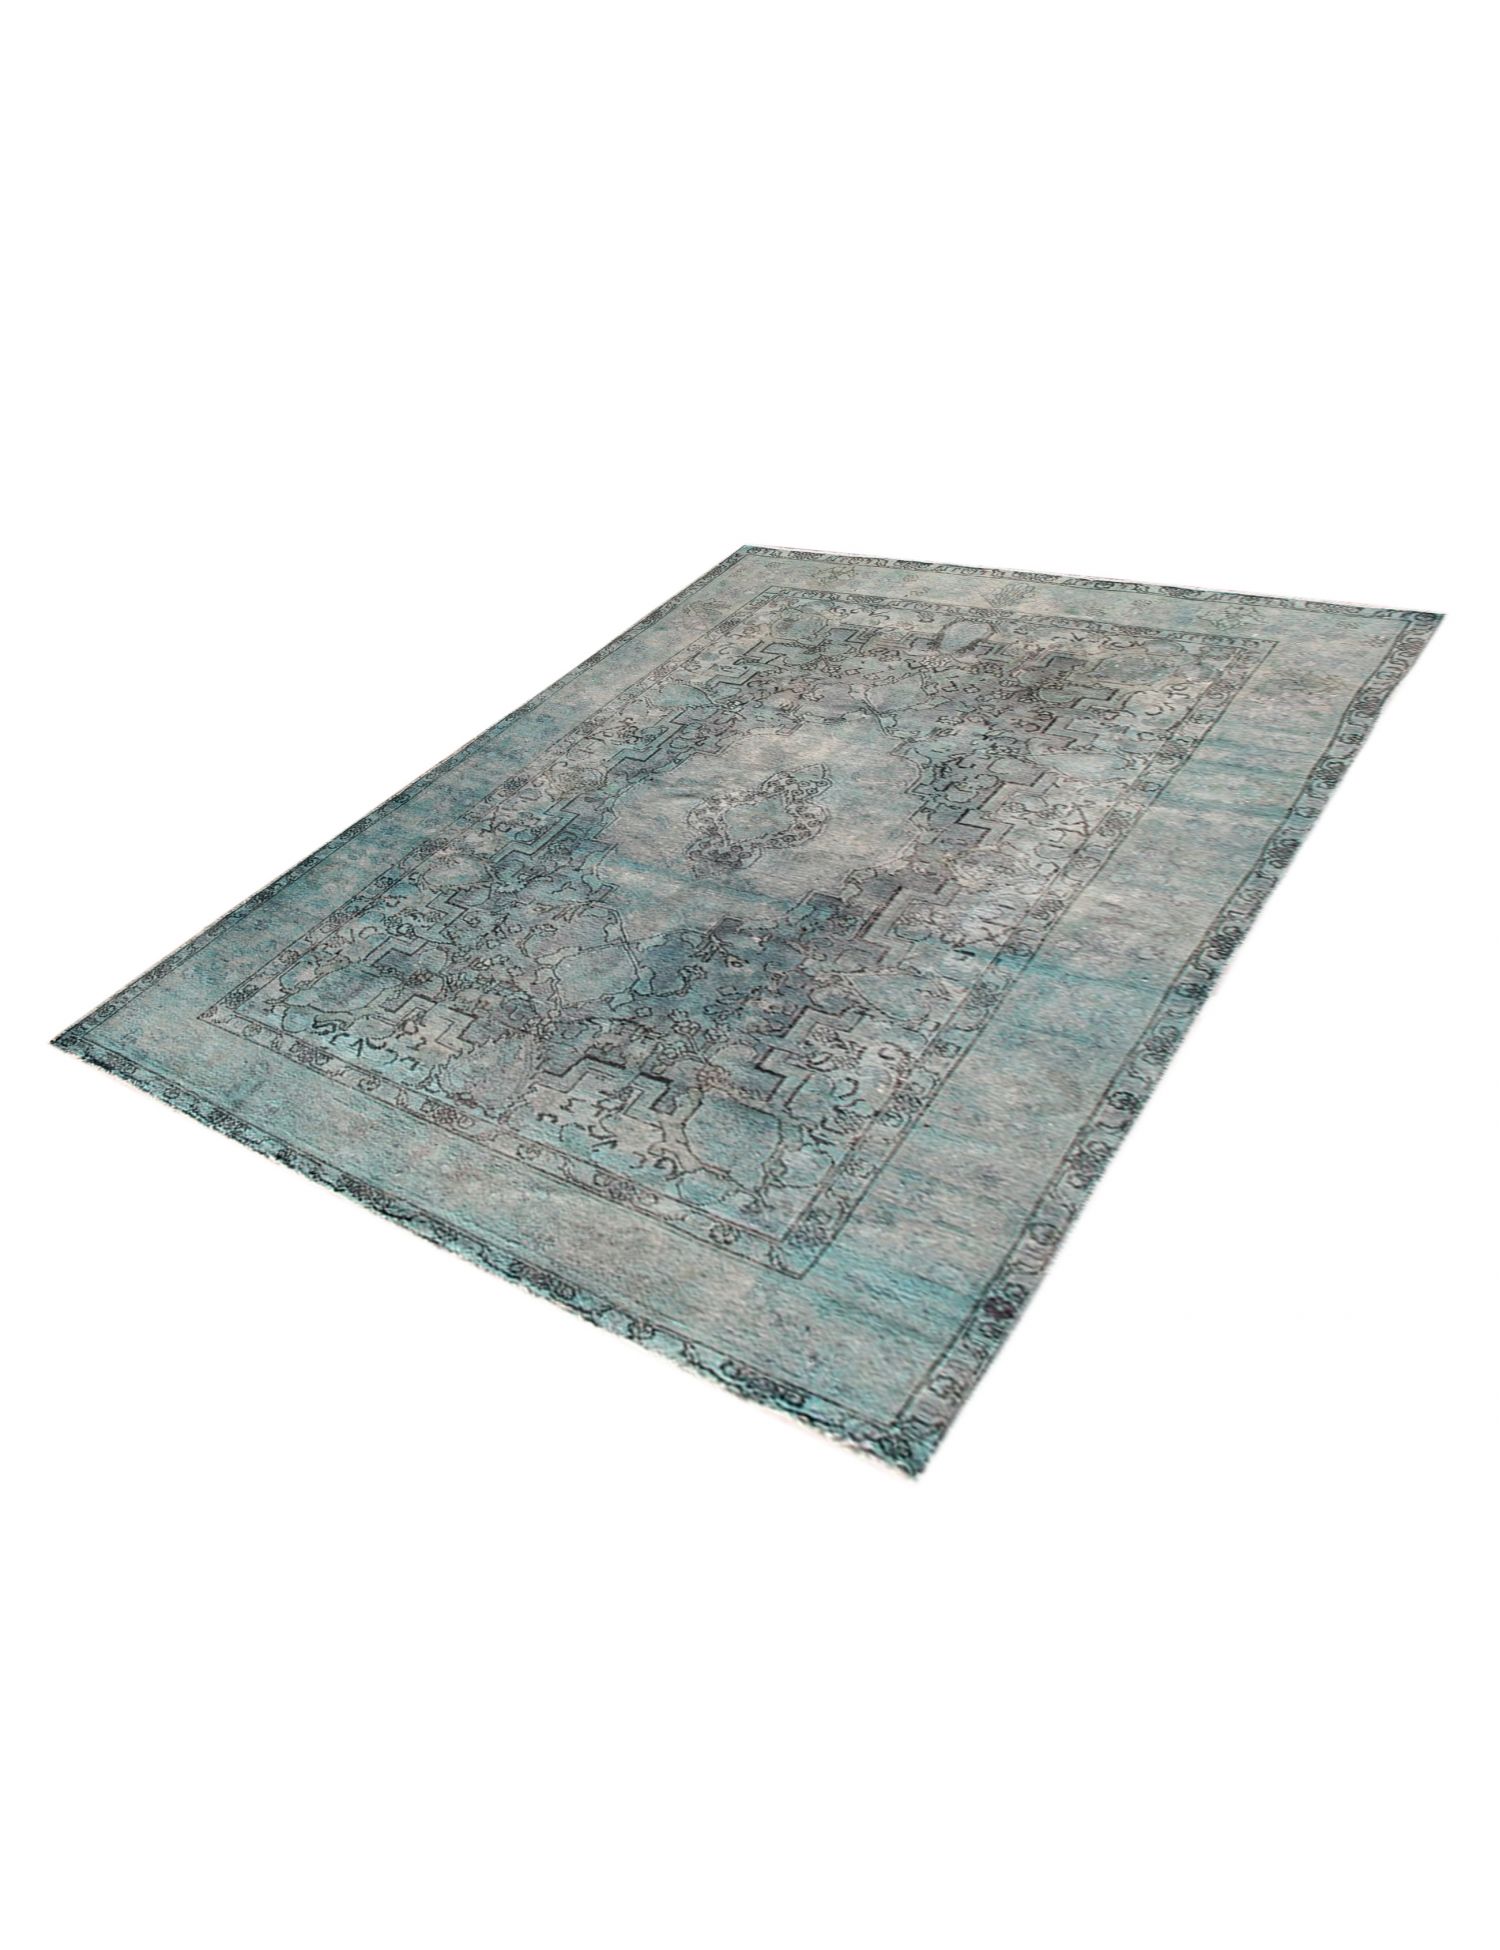 Persischer Vintage Teppich  türkis <br/>320 x 200 cm